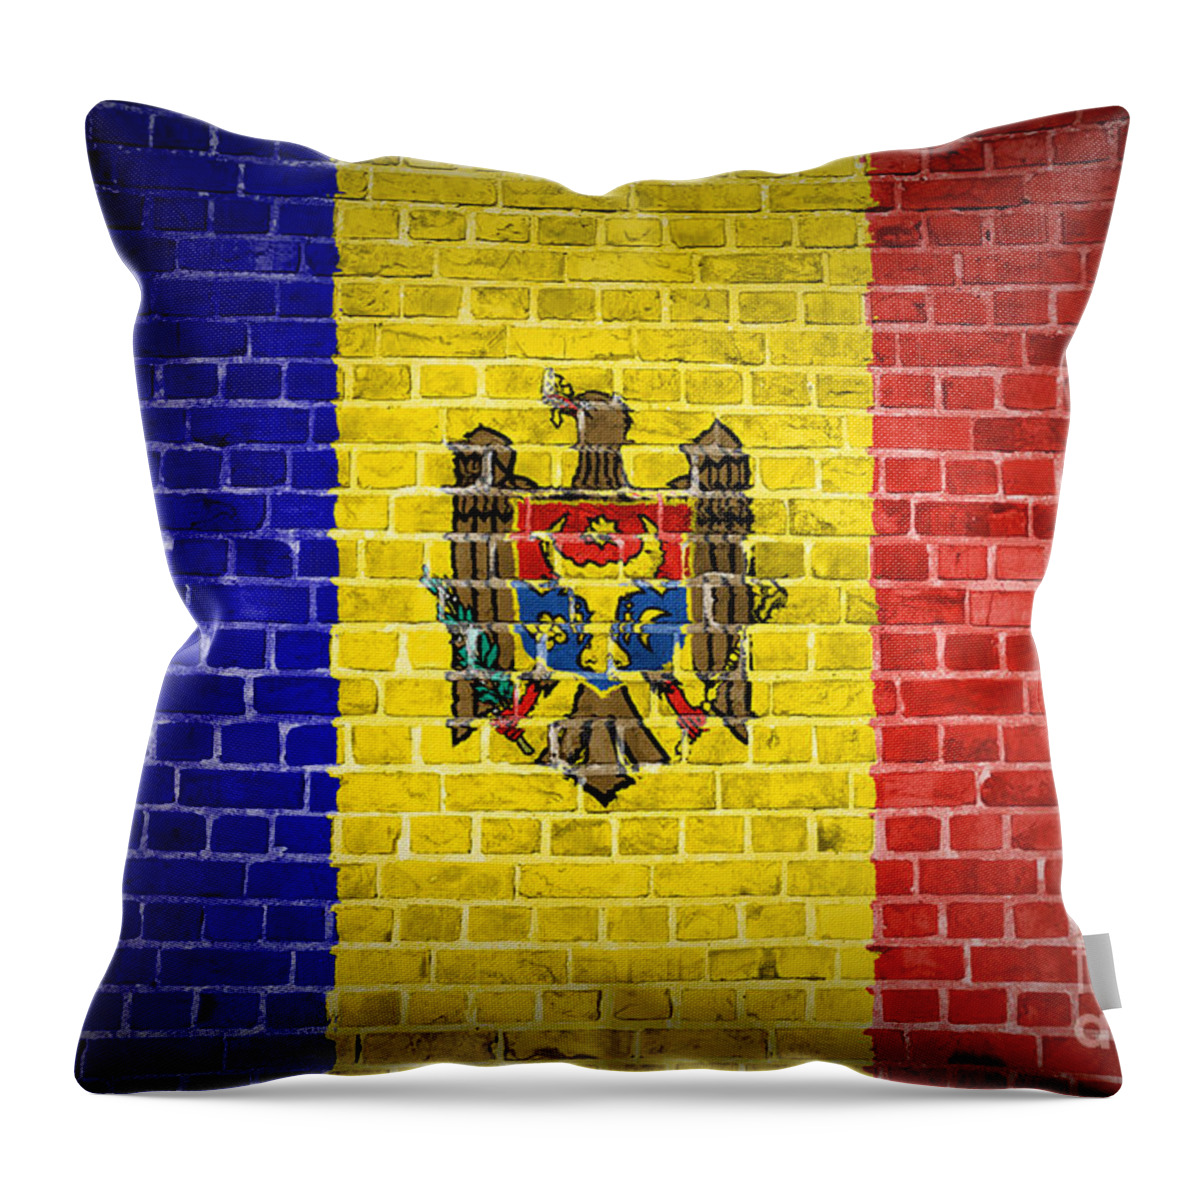 Moldova Throw Pillow featuring the digital art Brick Wall Moldova by Antony McAulay